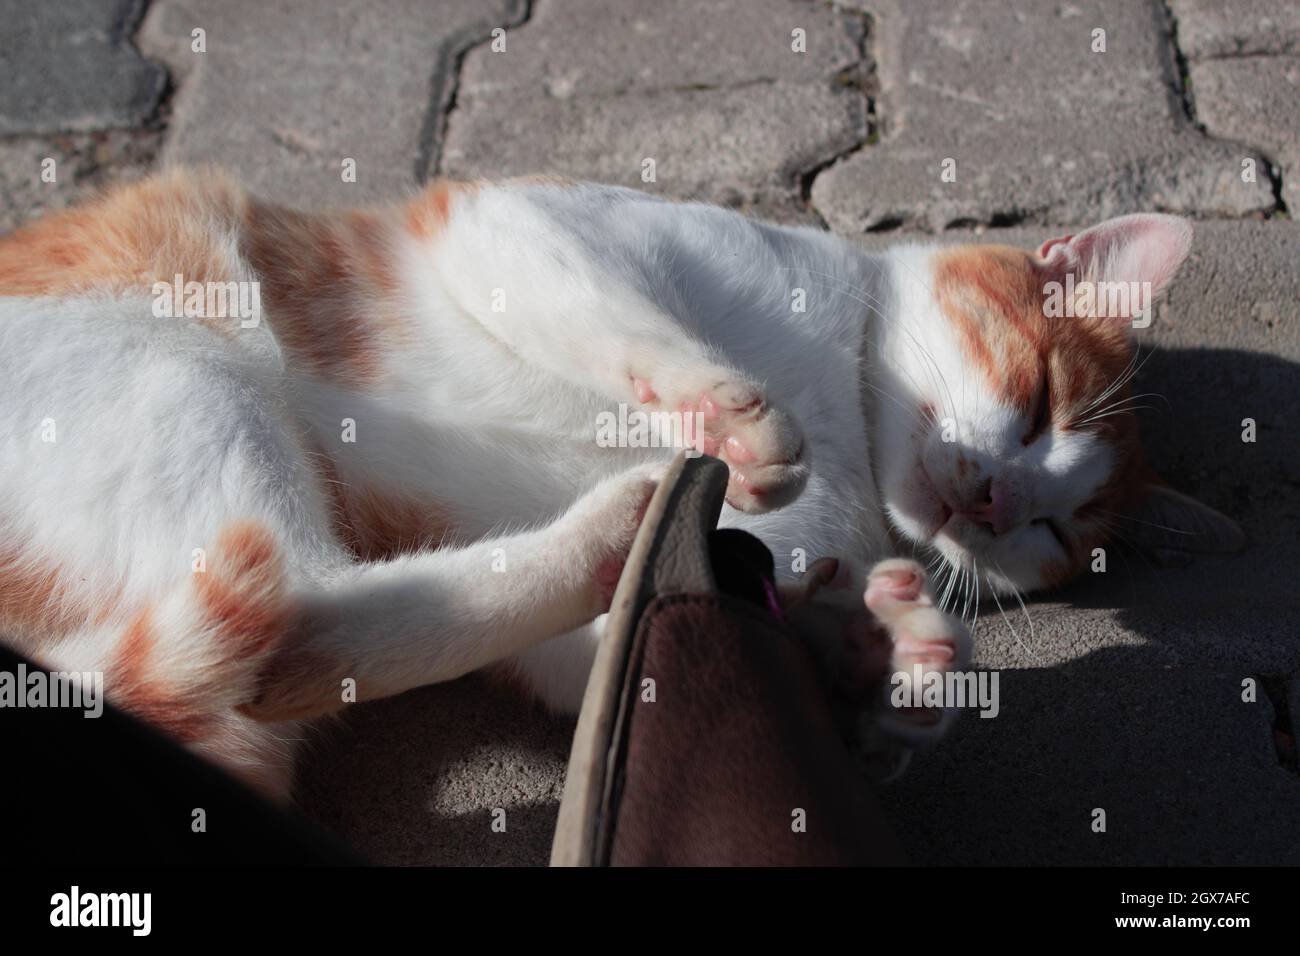 Chat orange mignon posé sur le sol et essayant d'attirer l'attention. Bel animal errant Banque D'Images